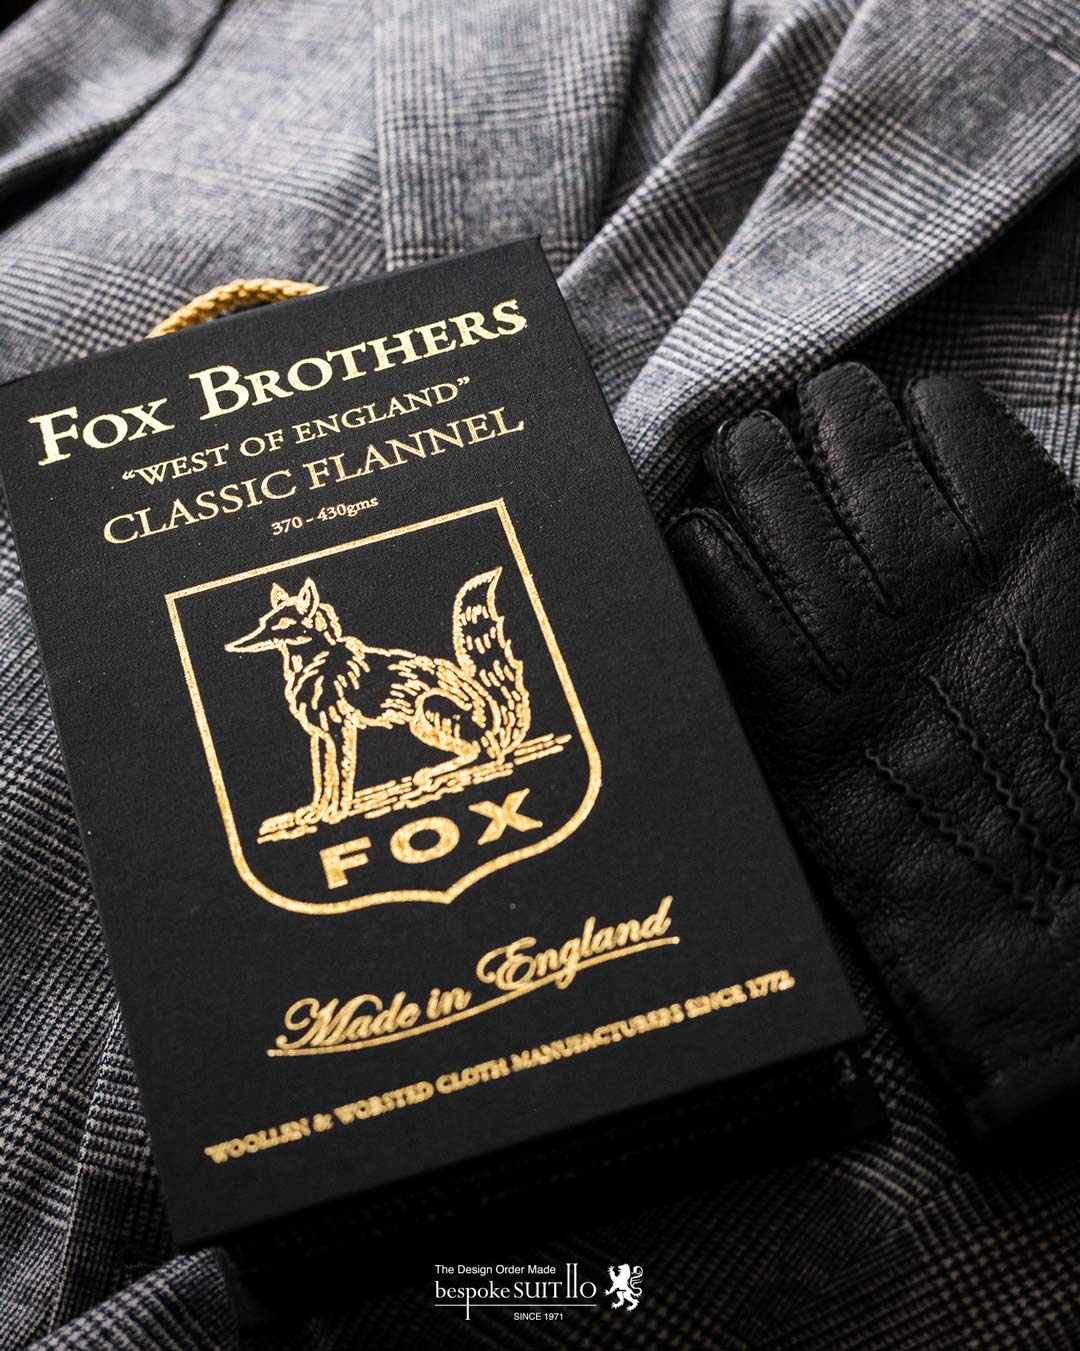 FOX BROTHERS,フォックス ブラザーズ,Collection,WORSTED CLASSICS(ウーステッド クラシックス),100% WOOL 320/350・400/430gms 49色柄,Information フォックスが誇る貴重なアーカイブからセレクトした、伝統的なウーステッドファブリックを復刻。仕上げには贅沢な「ロンドンシュランク」を施すことで生地をリラックスさせ、原毛の持つポテンシャルを活かしたナチュラルな質感を引き出しています。素晴らしい仕立て映えと美しいドレープ感にもきっとご満足いただけることでしょう。福岡県のオーダースーツ専門店 bspokeSUIT110